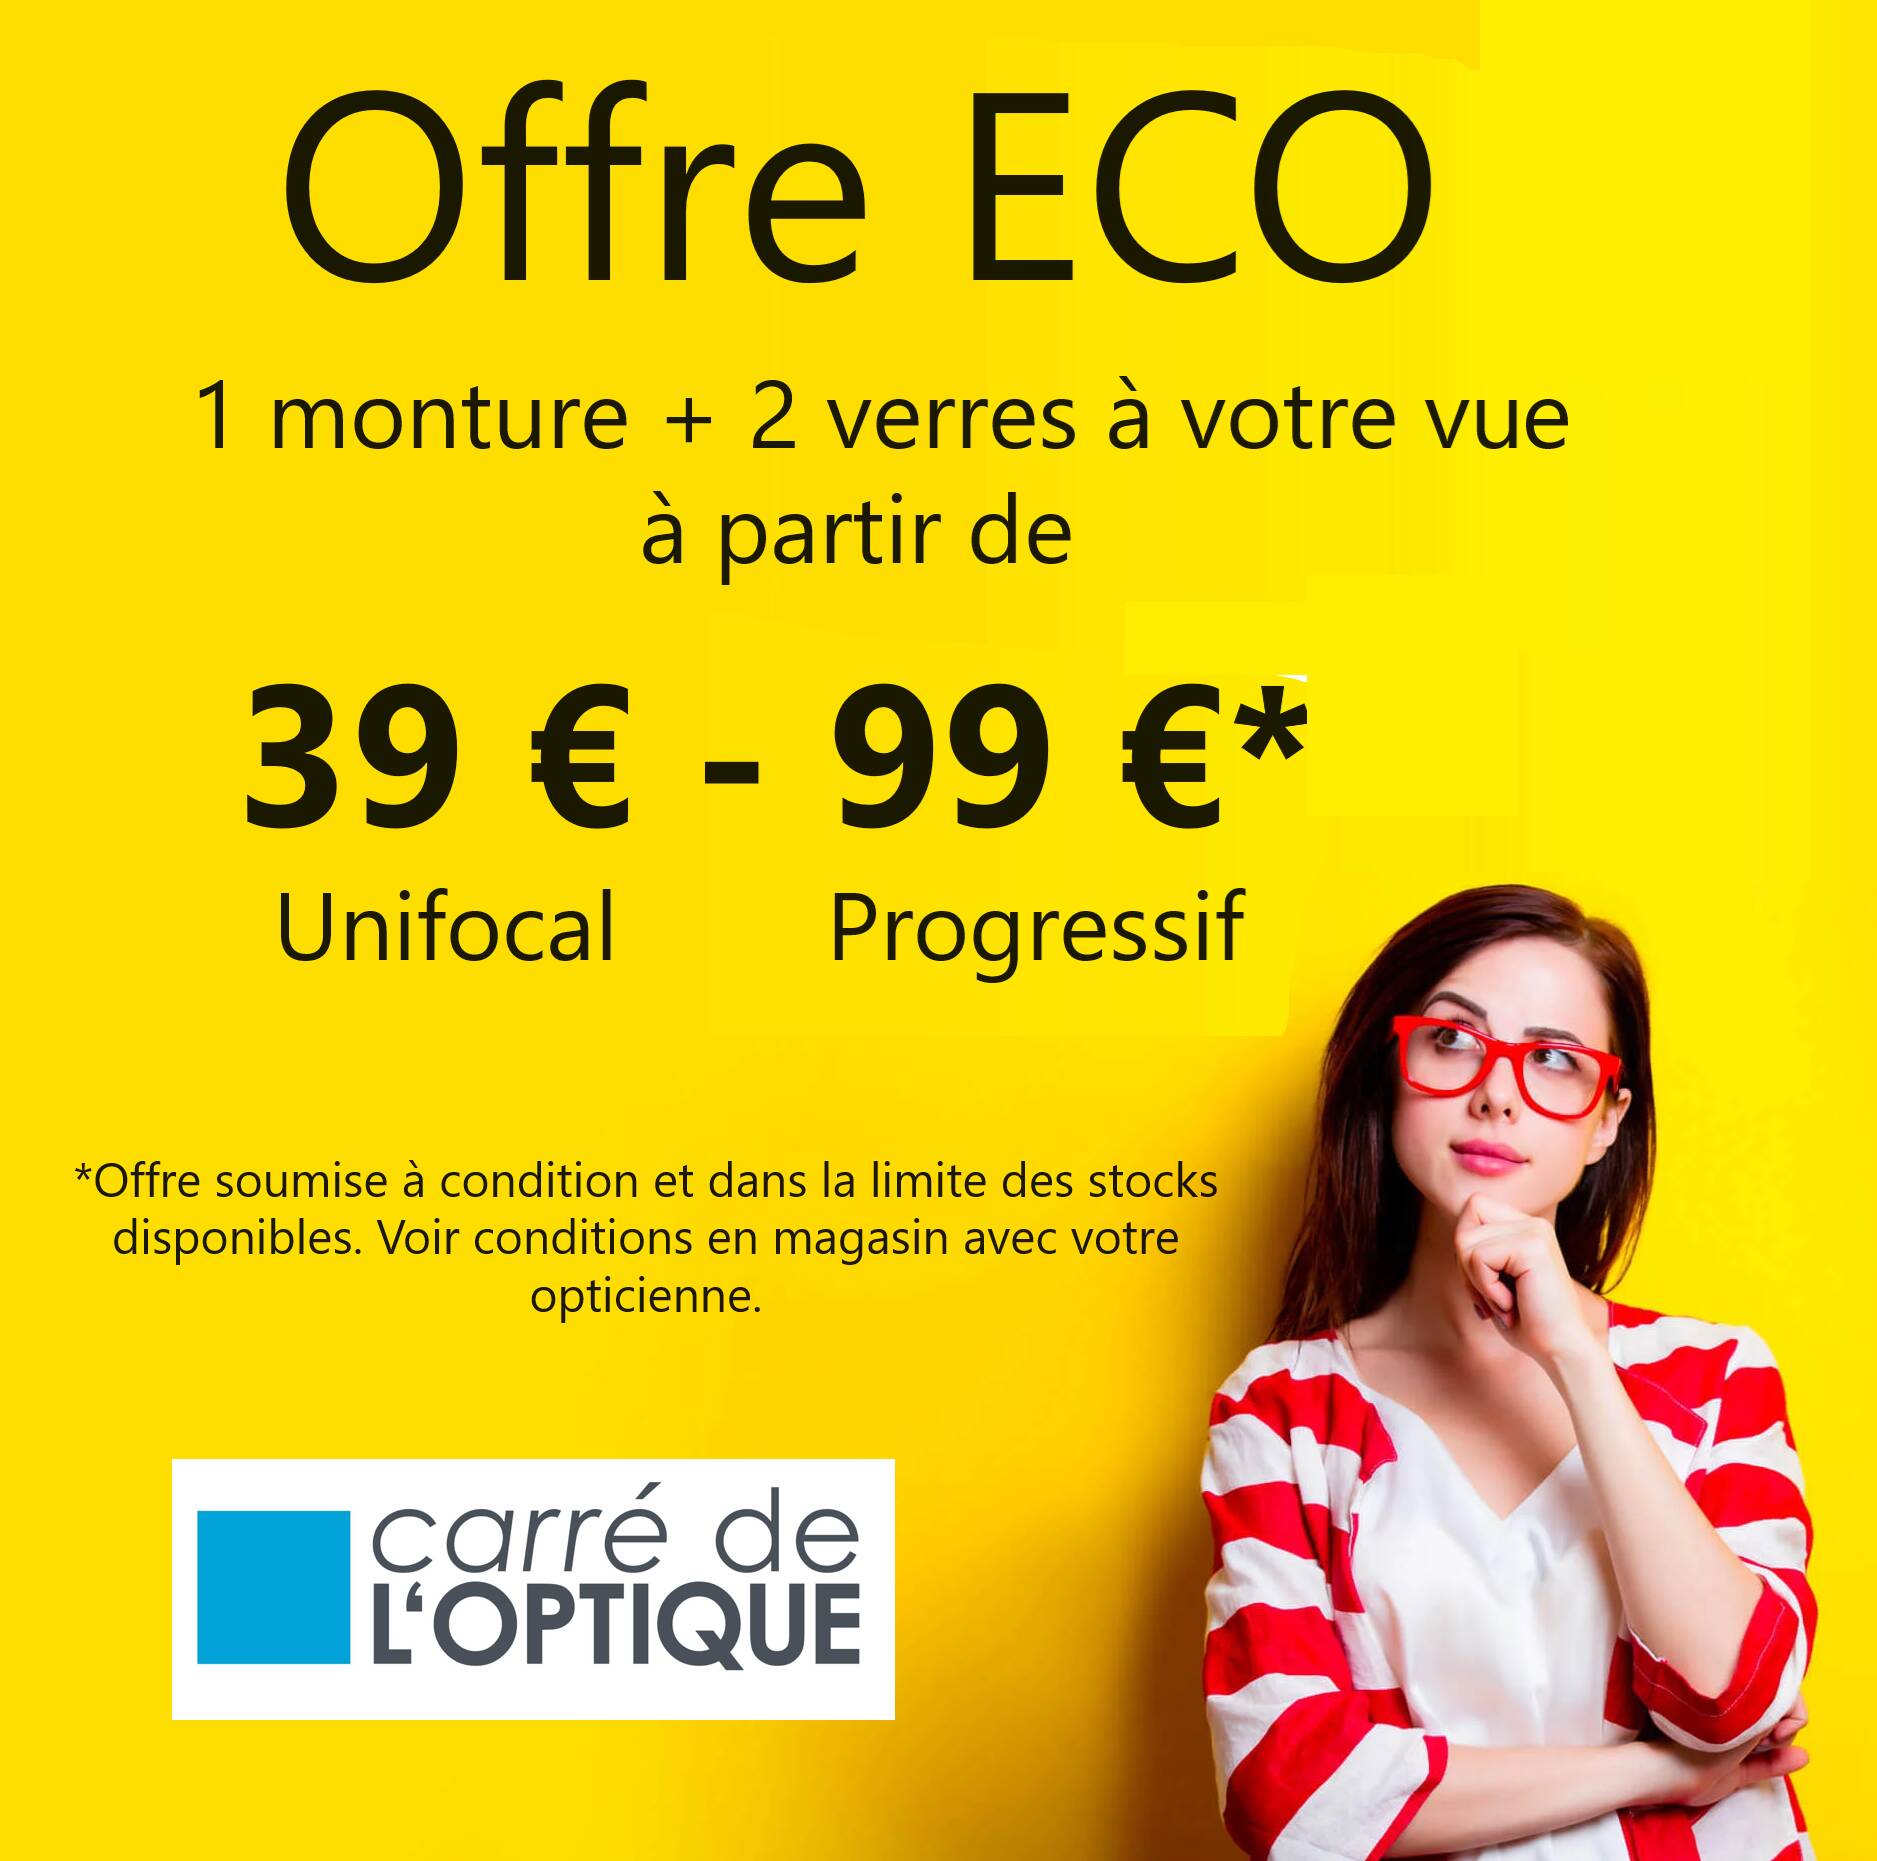 Actualité optique opticien : OFFRE ECO 39€-99€